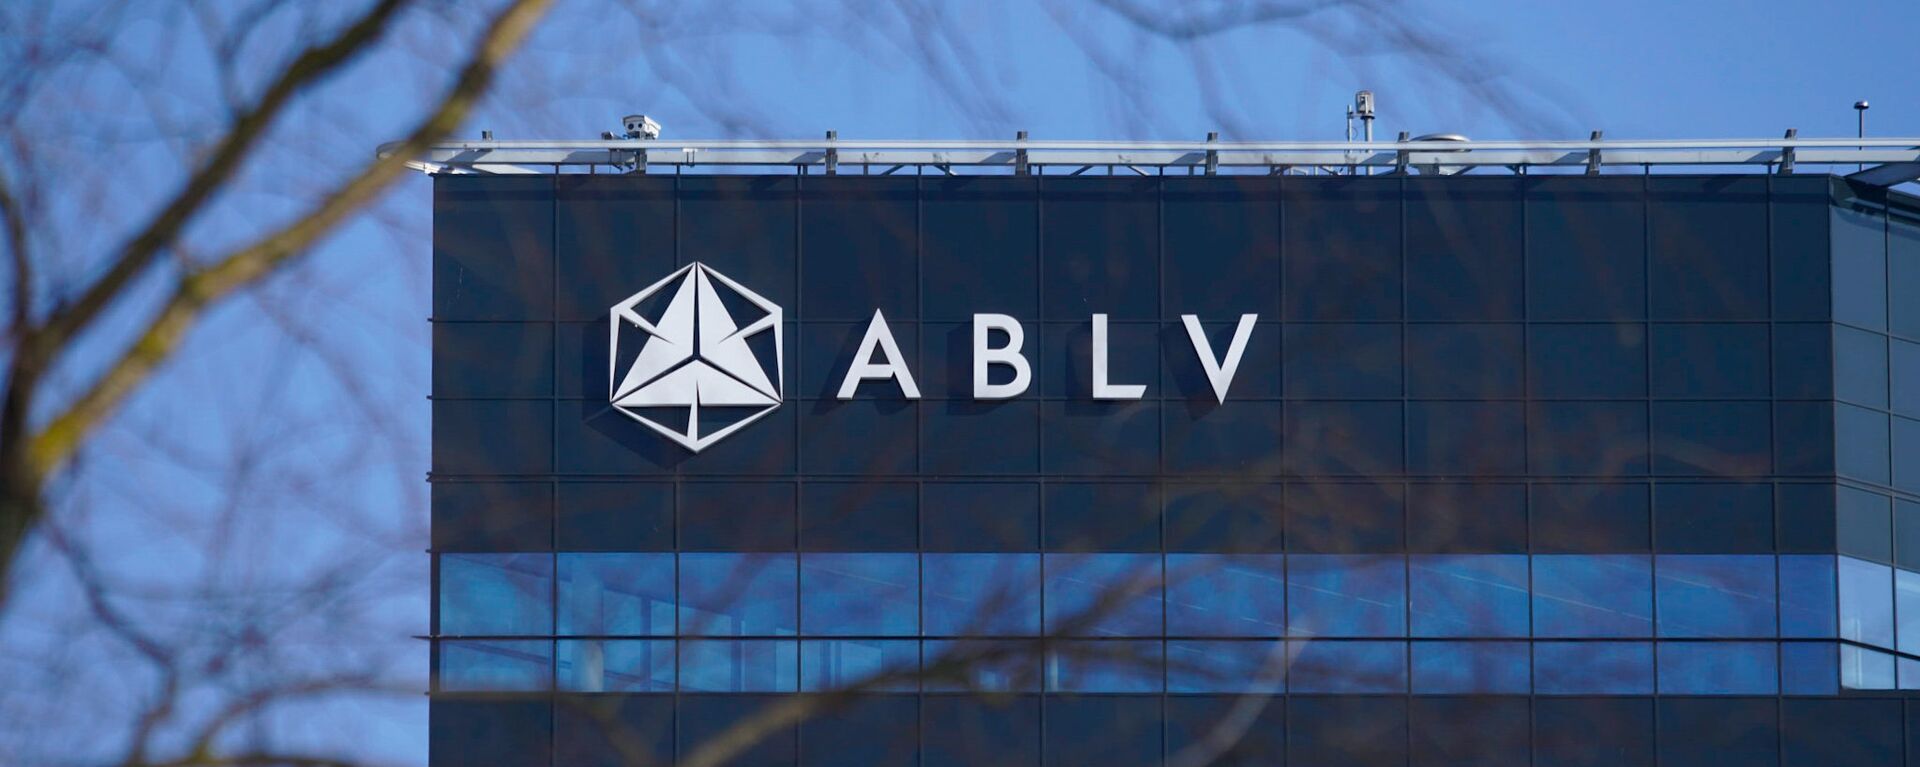 Банк ABLV - Sputnik Latvija, 1920, 30.03.2019